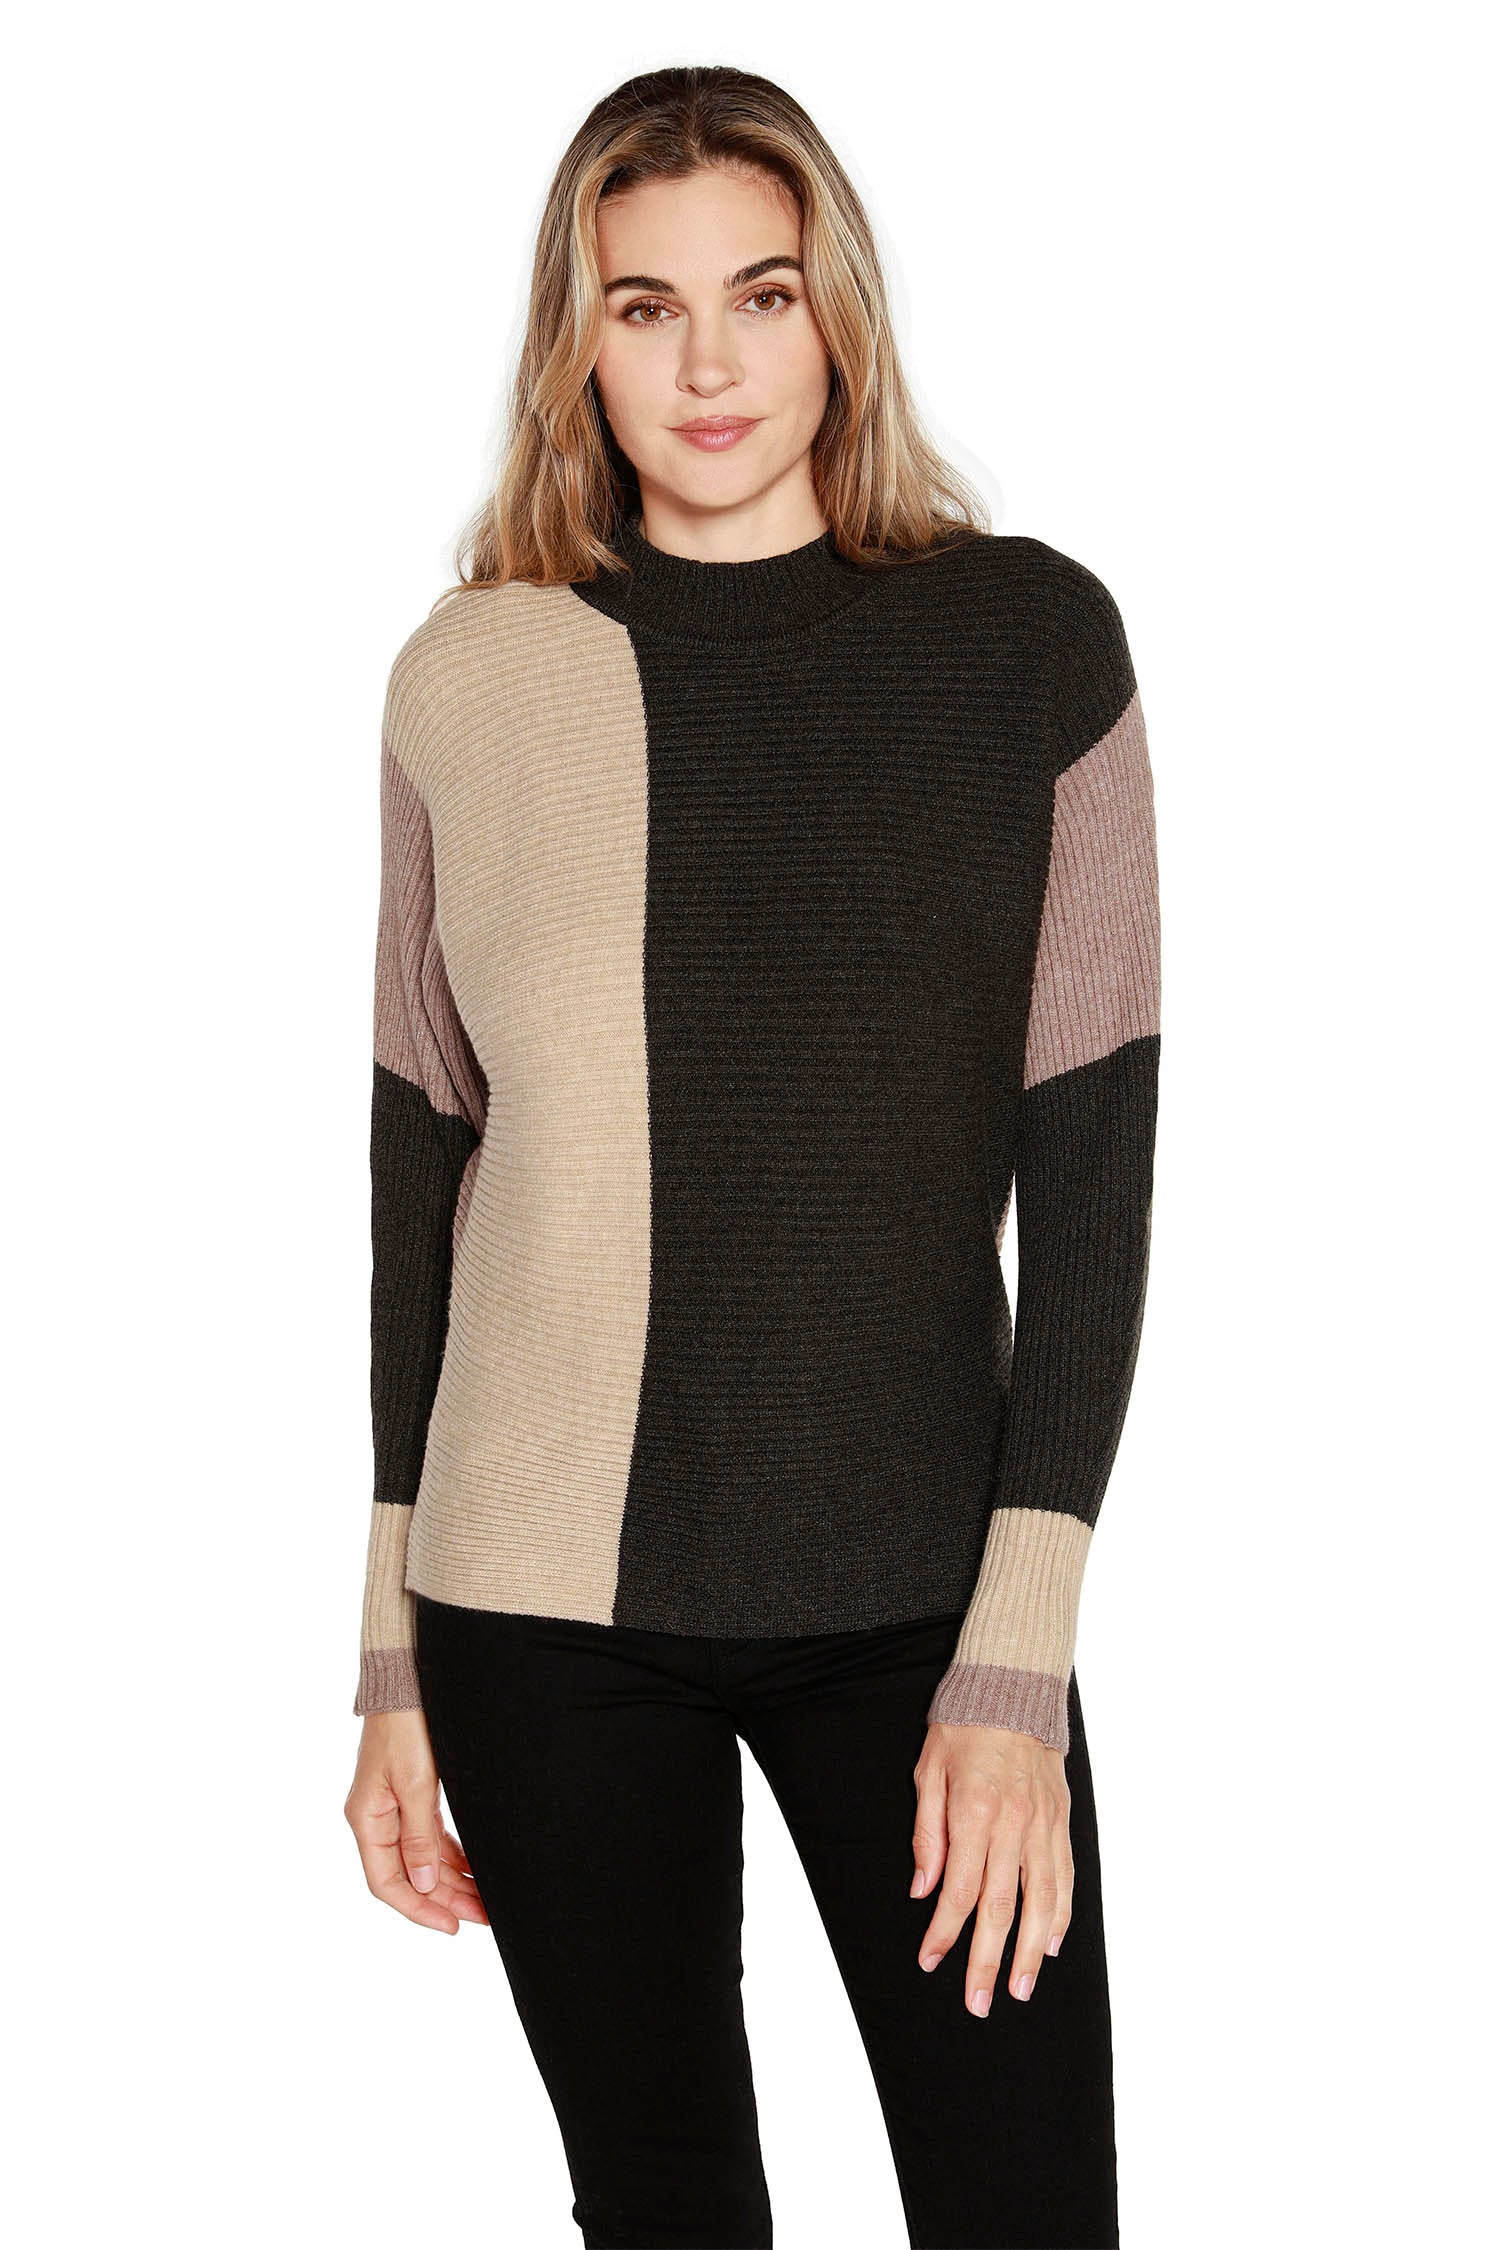 Suéter tipo pulóver para mujer en tejido suave de minicanalé con bloques de color y cuello simulado